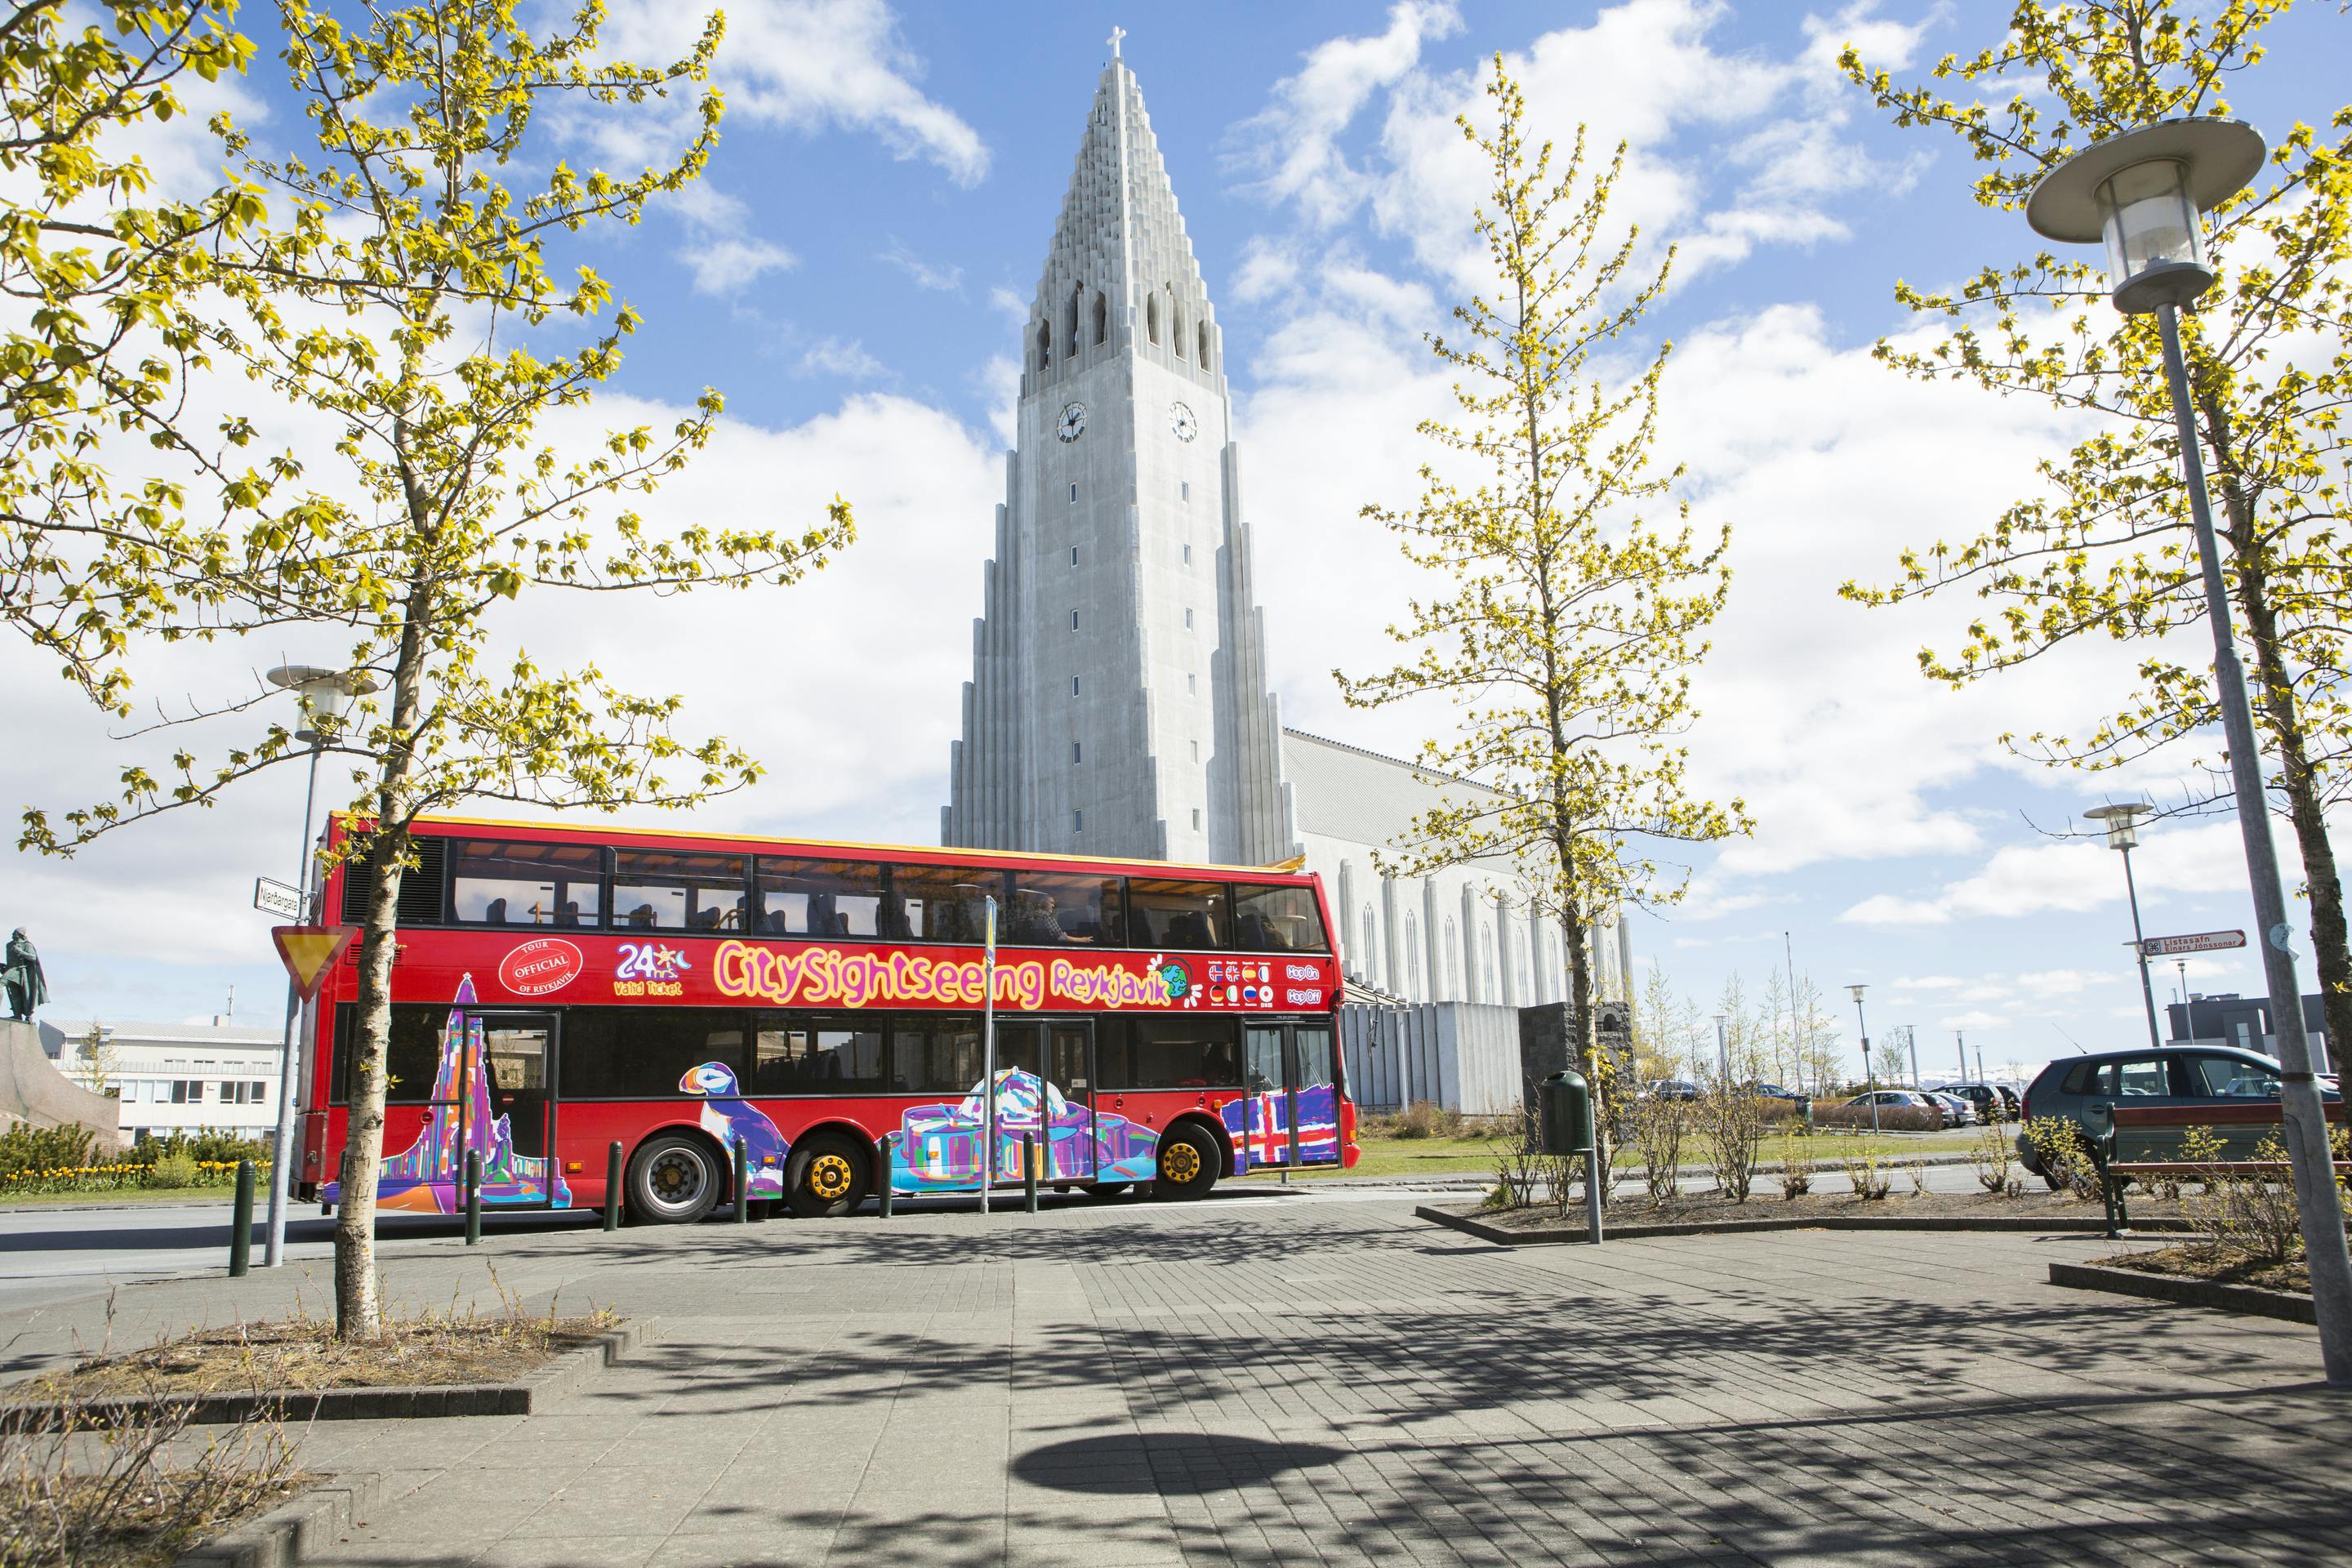 Stadtrundfahrt mit dem Hop-on-Hop-off-Bus durch Reykjavik